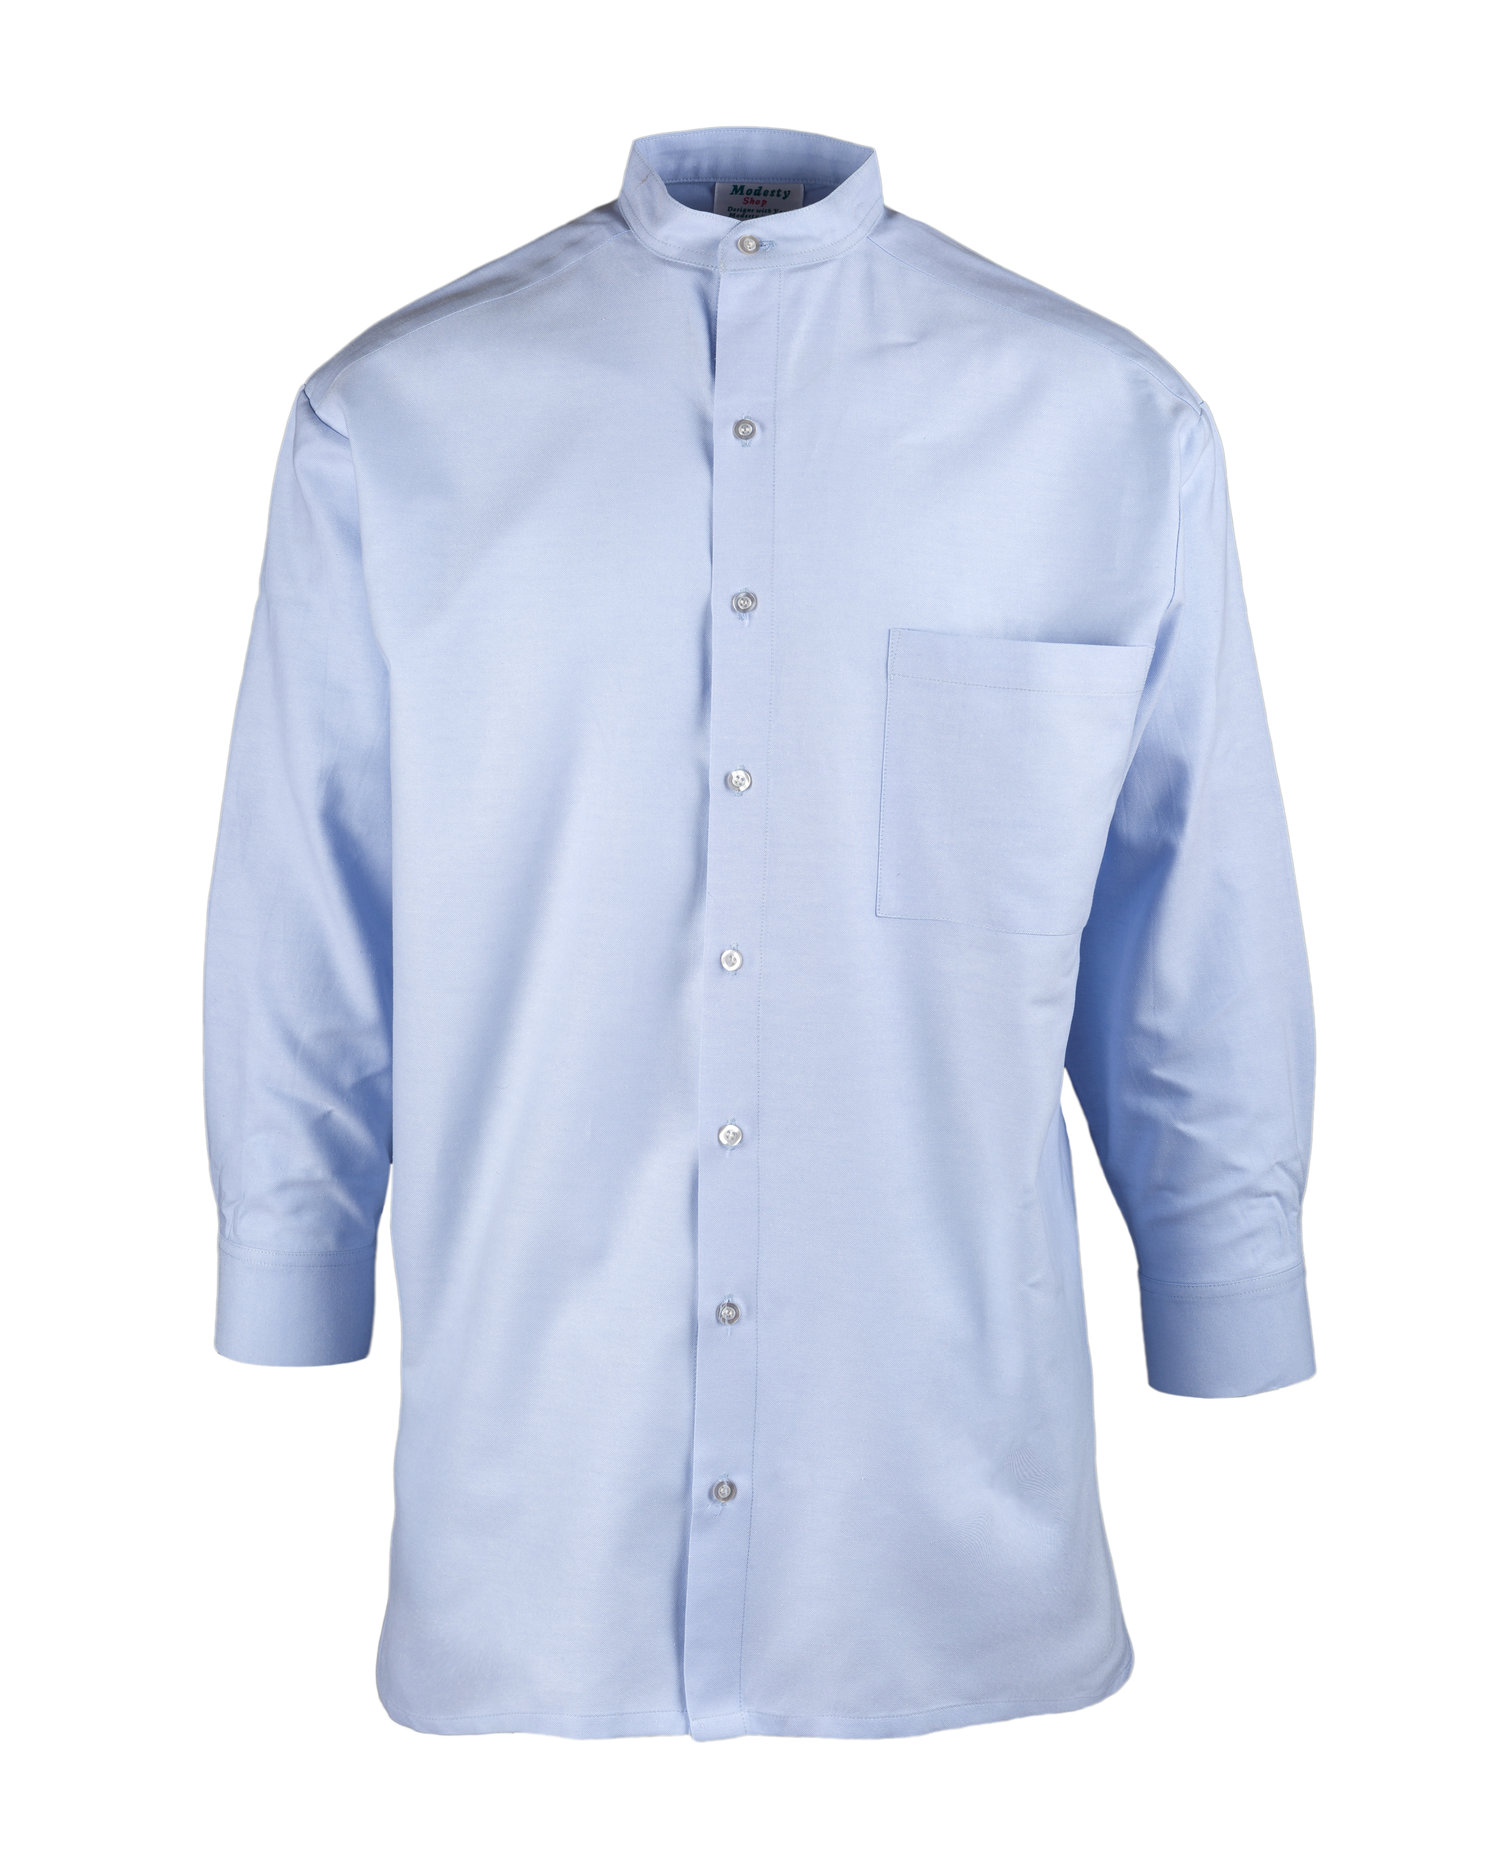 Men's Light Blue Shirt — MODESTY SHOP